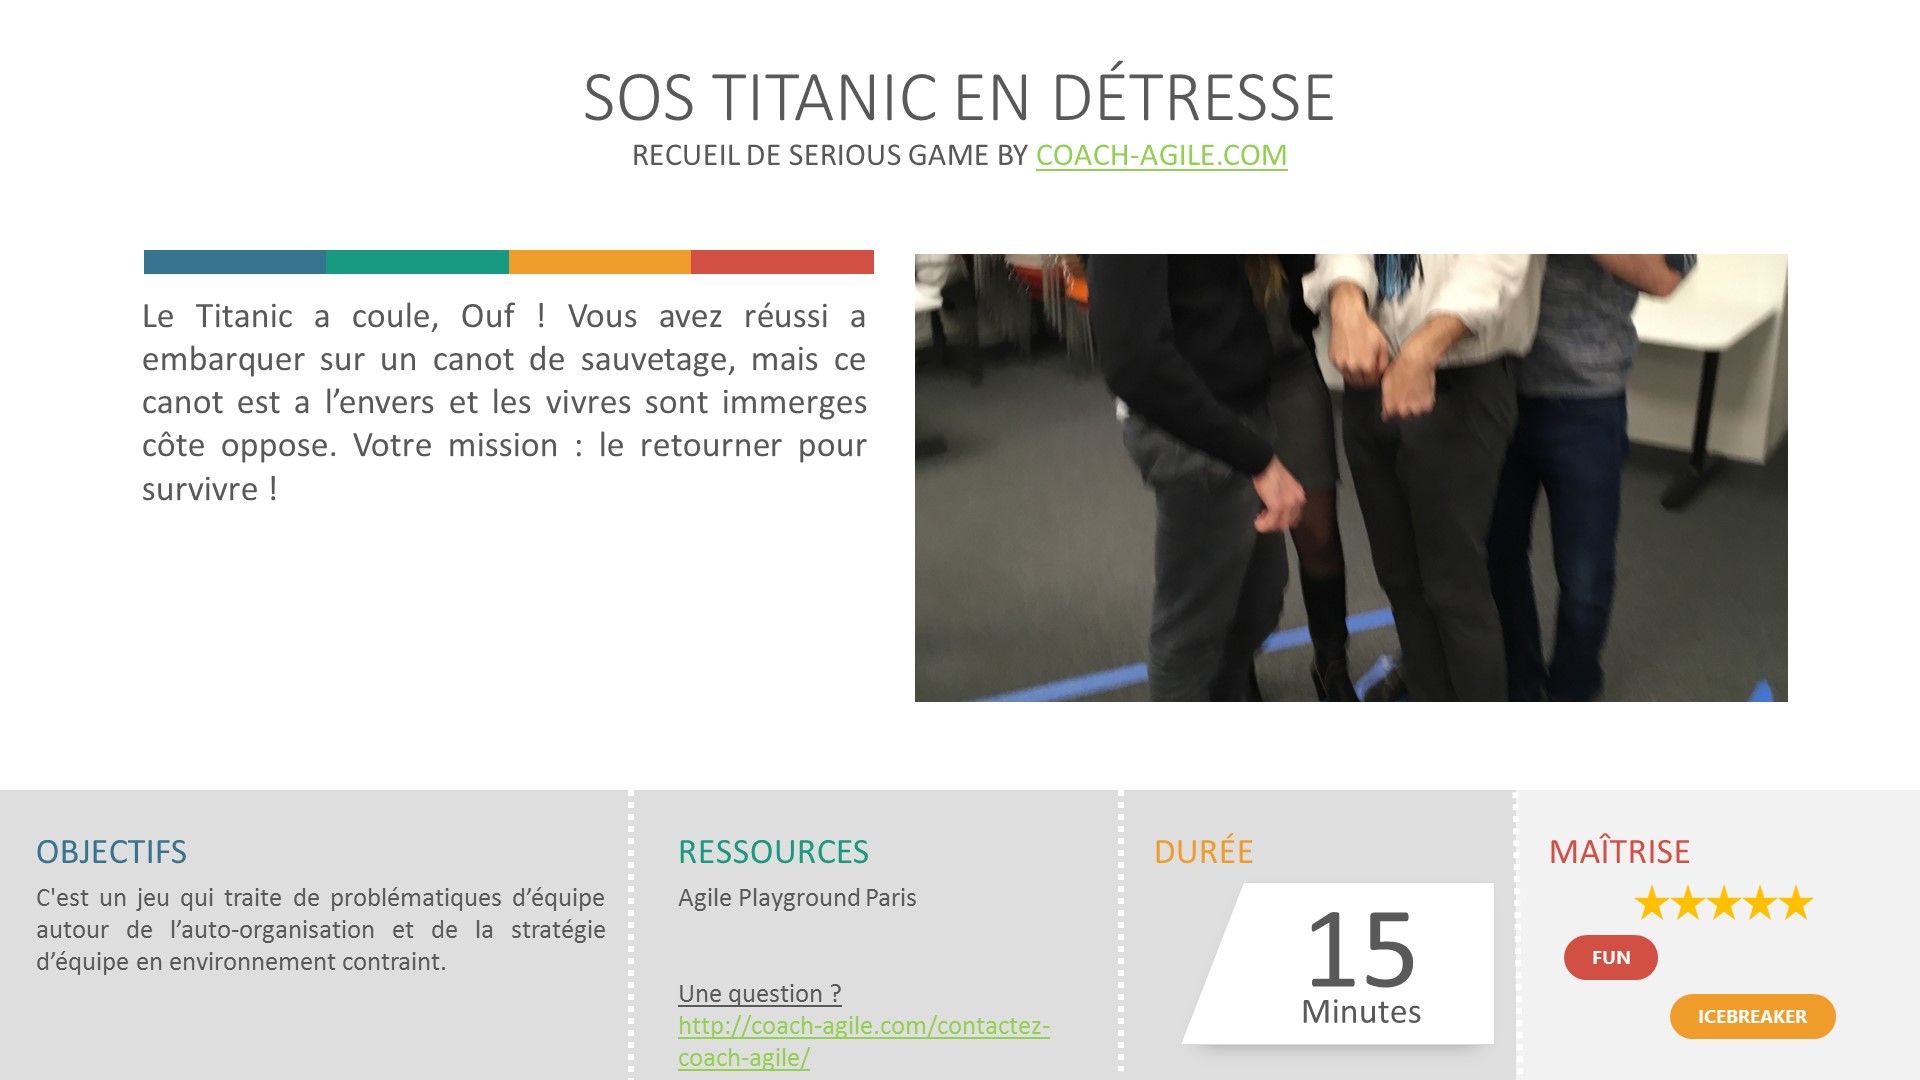 ICE BREAKER : SOS TITANIC